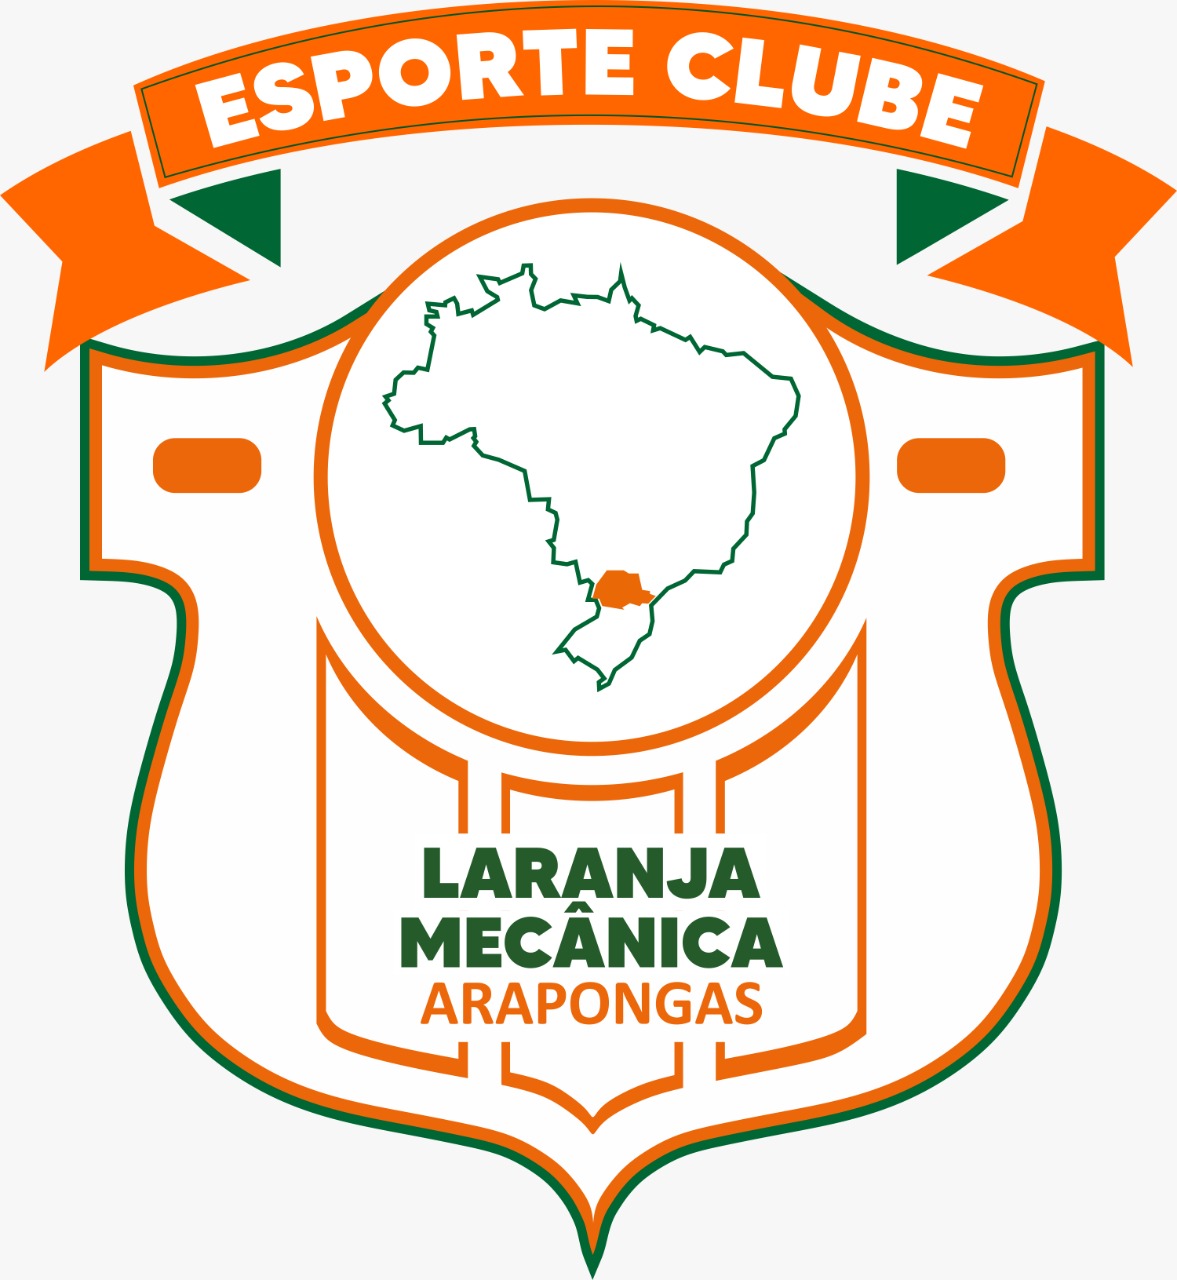 PSTC - Classificação atualizada do Campeonato Paranaense da Segunda Divisão  após 7 rodadas disputadas! #PSTC #CampeonatoParanaense #Futebol